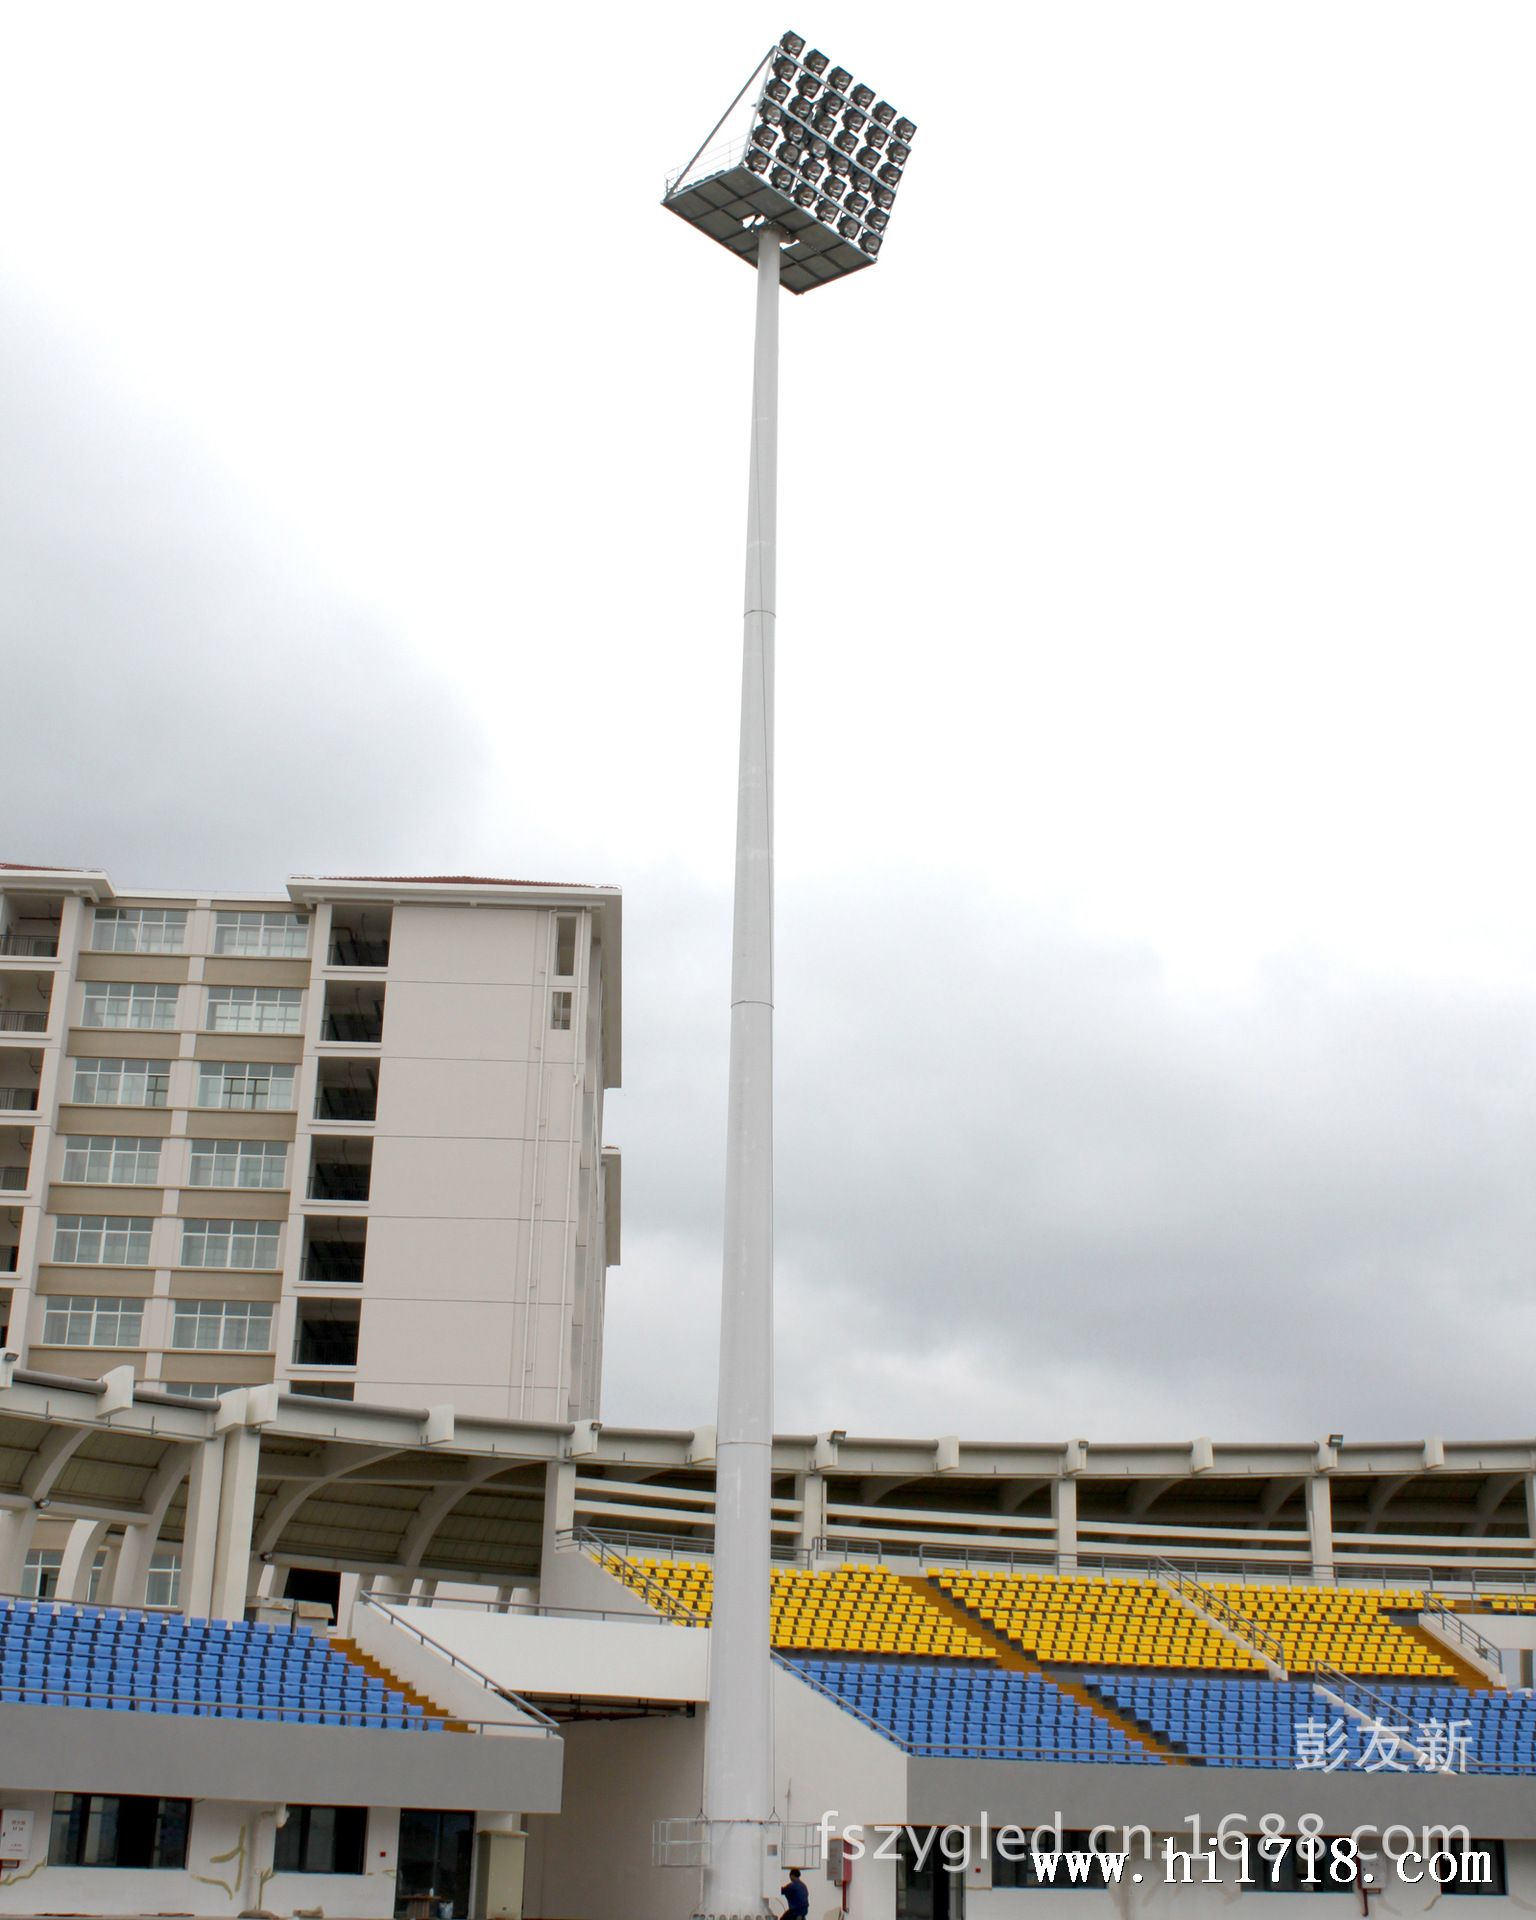 体育场升降高杆灯安装球场大型双升降高杆灯照明可配led灯具